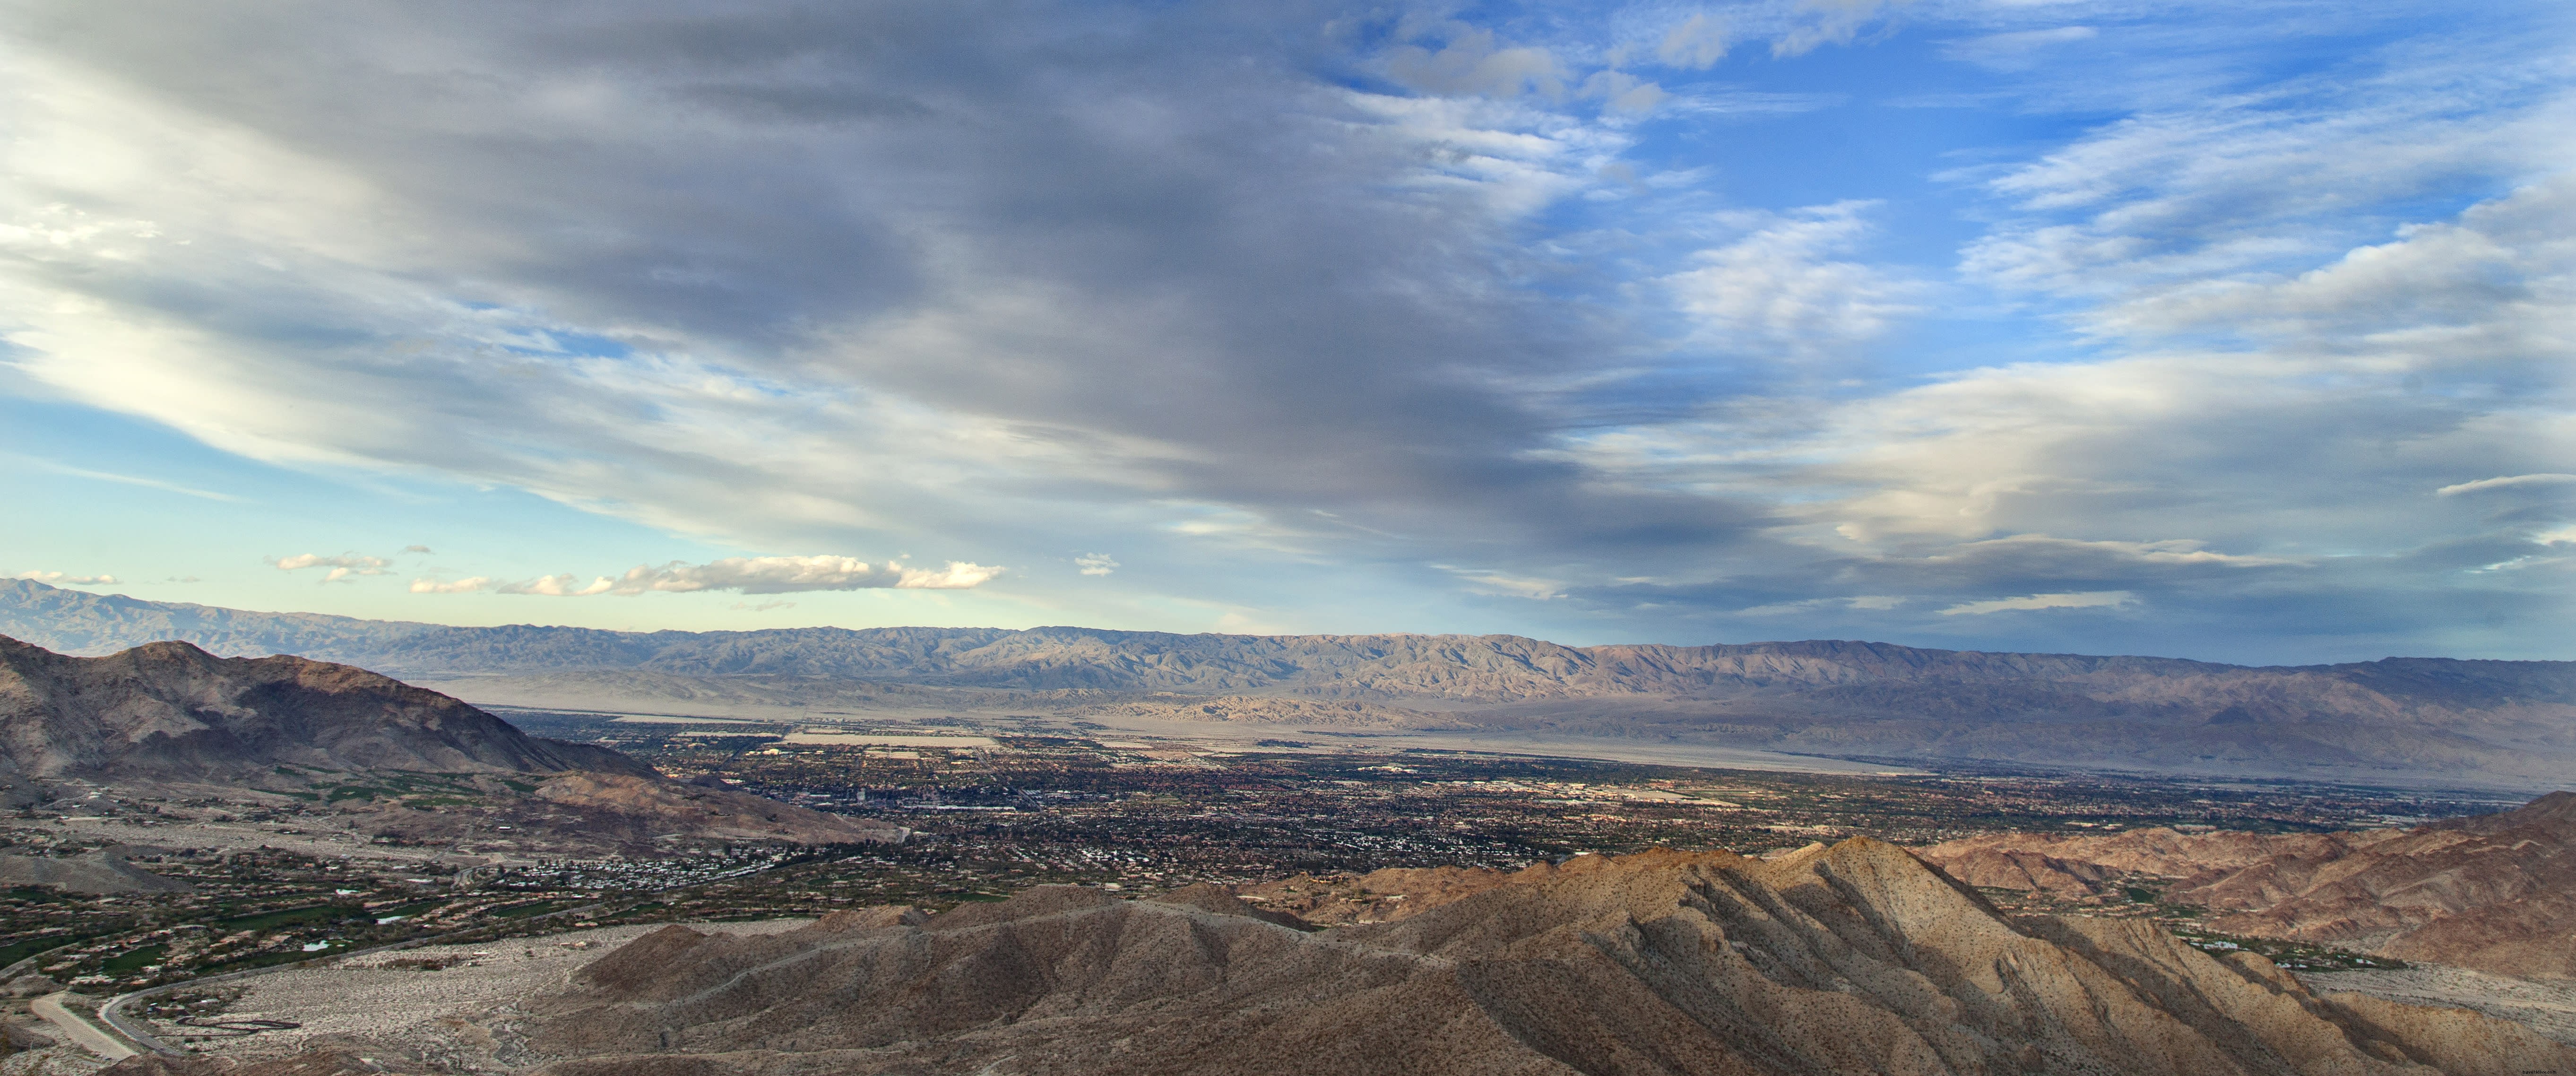 La mirada del amor:cinco románticas vistas del valle de Coachella 